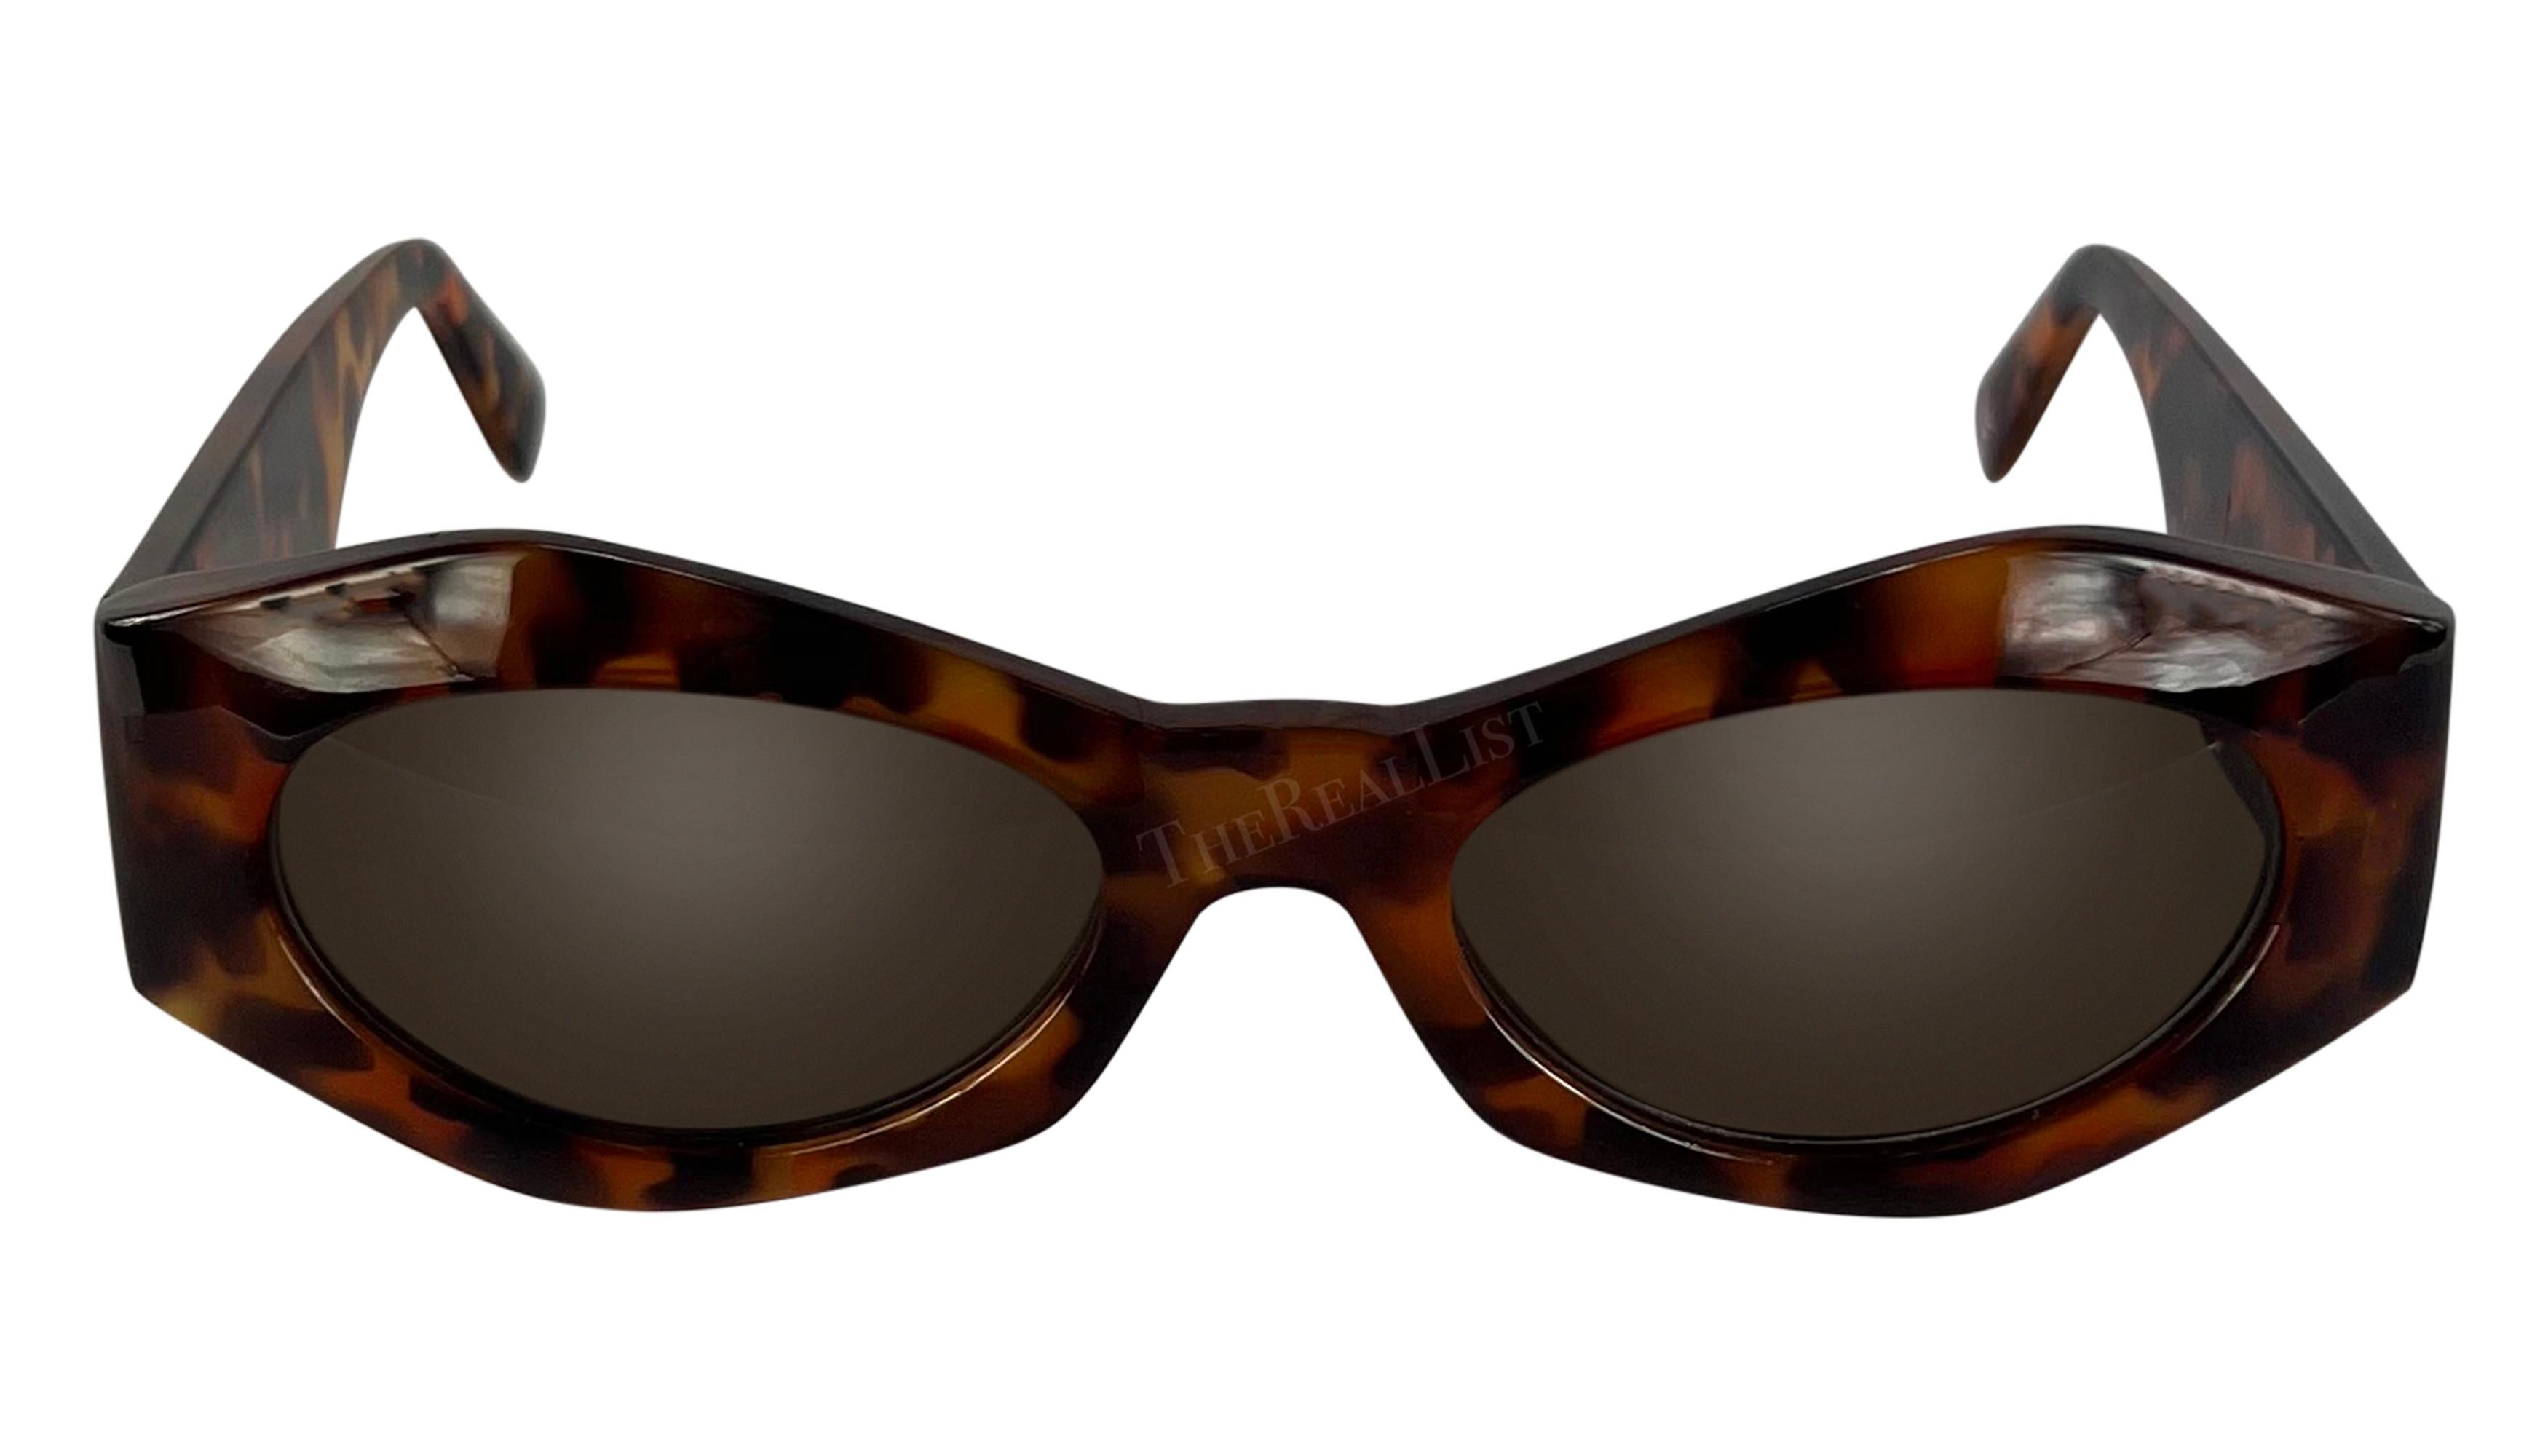 Conçues par Gianni Versace dans les années 1990, ces lunettes de soleil angulaires en écaille de fausse tortue sont un complément ultra-chic à toute garde-robe. Leur forme angulaire élégante est accentuée par le relief emblématique de la Méduse de